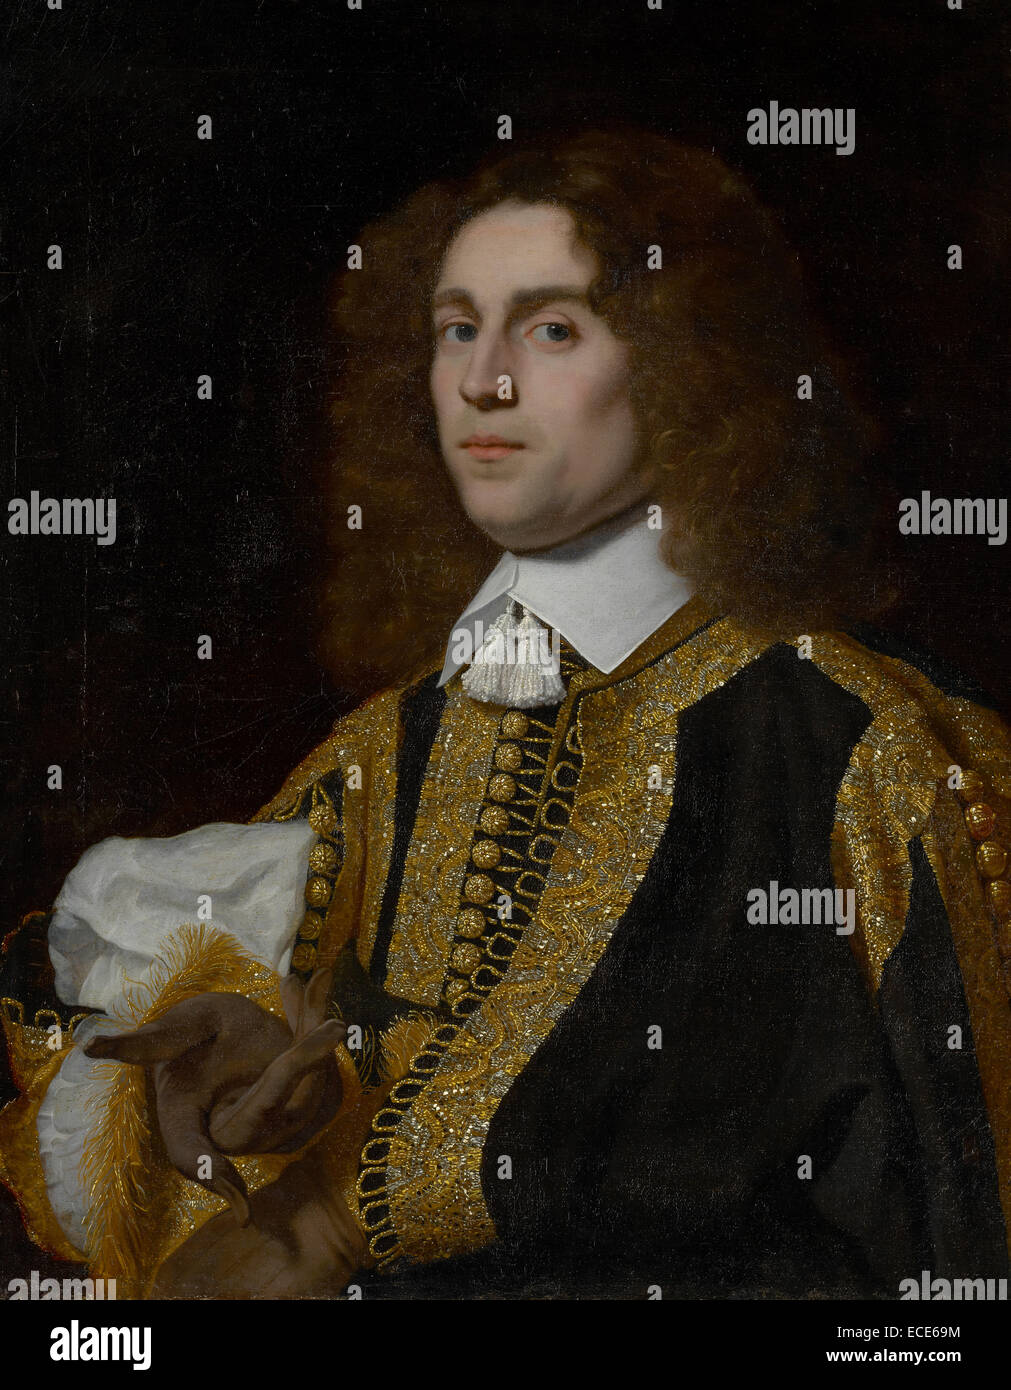 Porträt eines jungen Mannes in militärischen Tracht; Bartholomeus van der Helst, Niederländisch, 1613-1670; 1650; Öl auf Leinwand; Ungerahmt: 73,7 x 59,1 cm (29 x 23 1/4 Zoll), gerahmt: 96,5 x 83,2 x 7,9 cm (38 x 32 3/4 x 3 1/8 Zoll.) Stockfoto